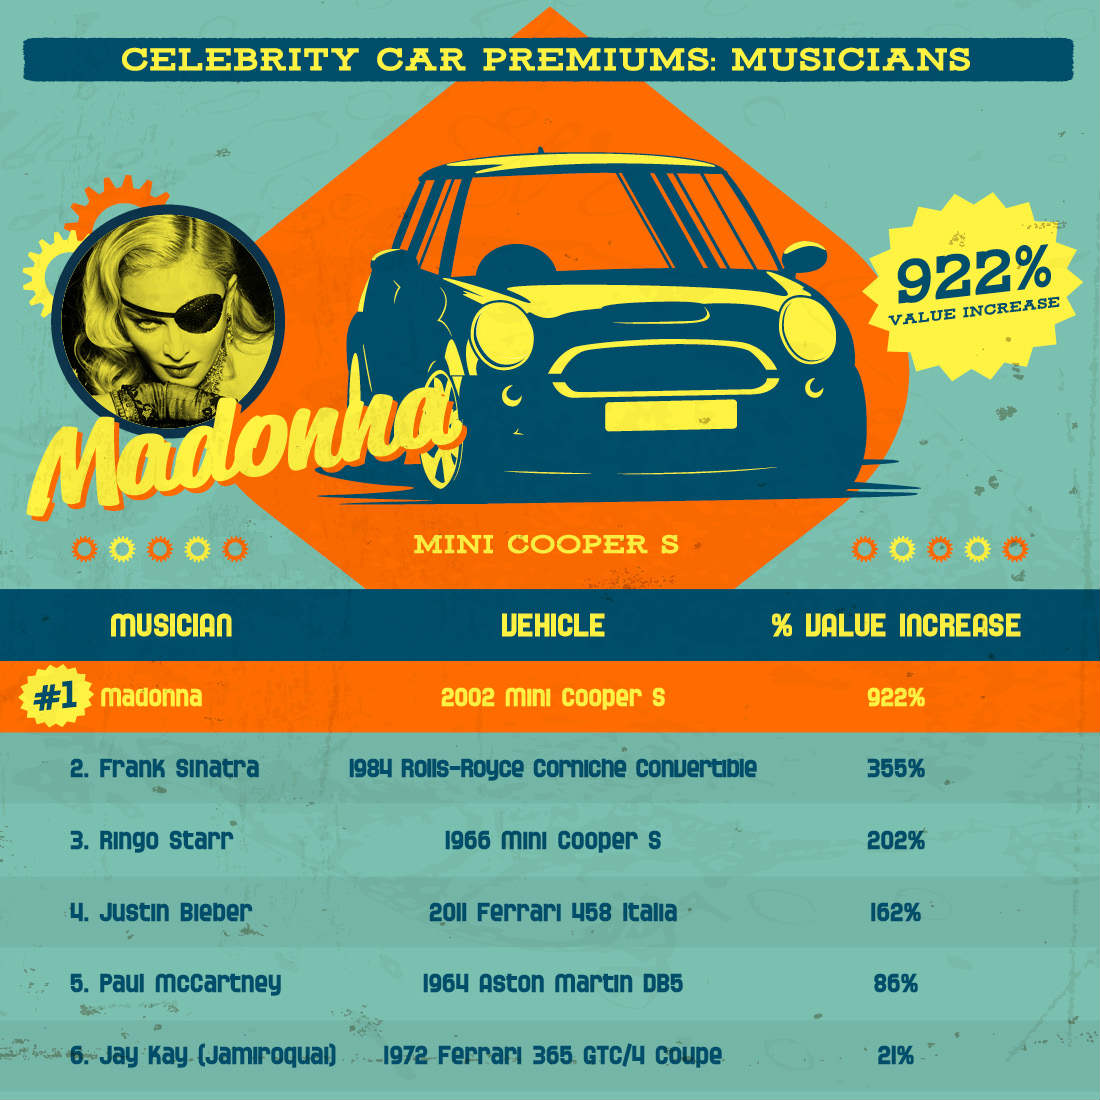 Celebrity-car-premiums-musicians